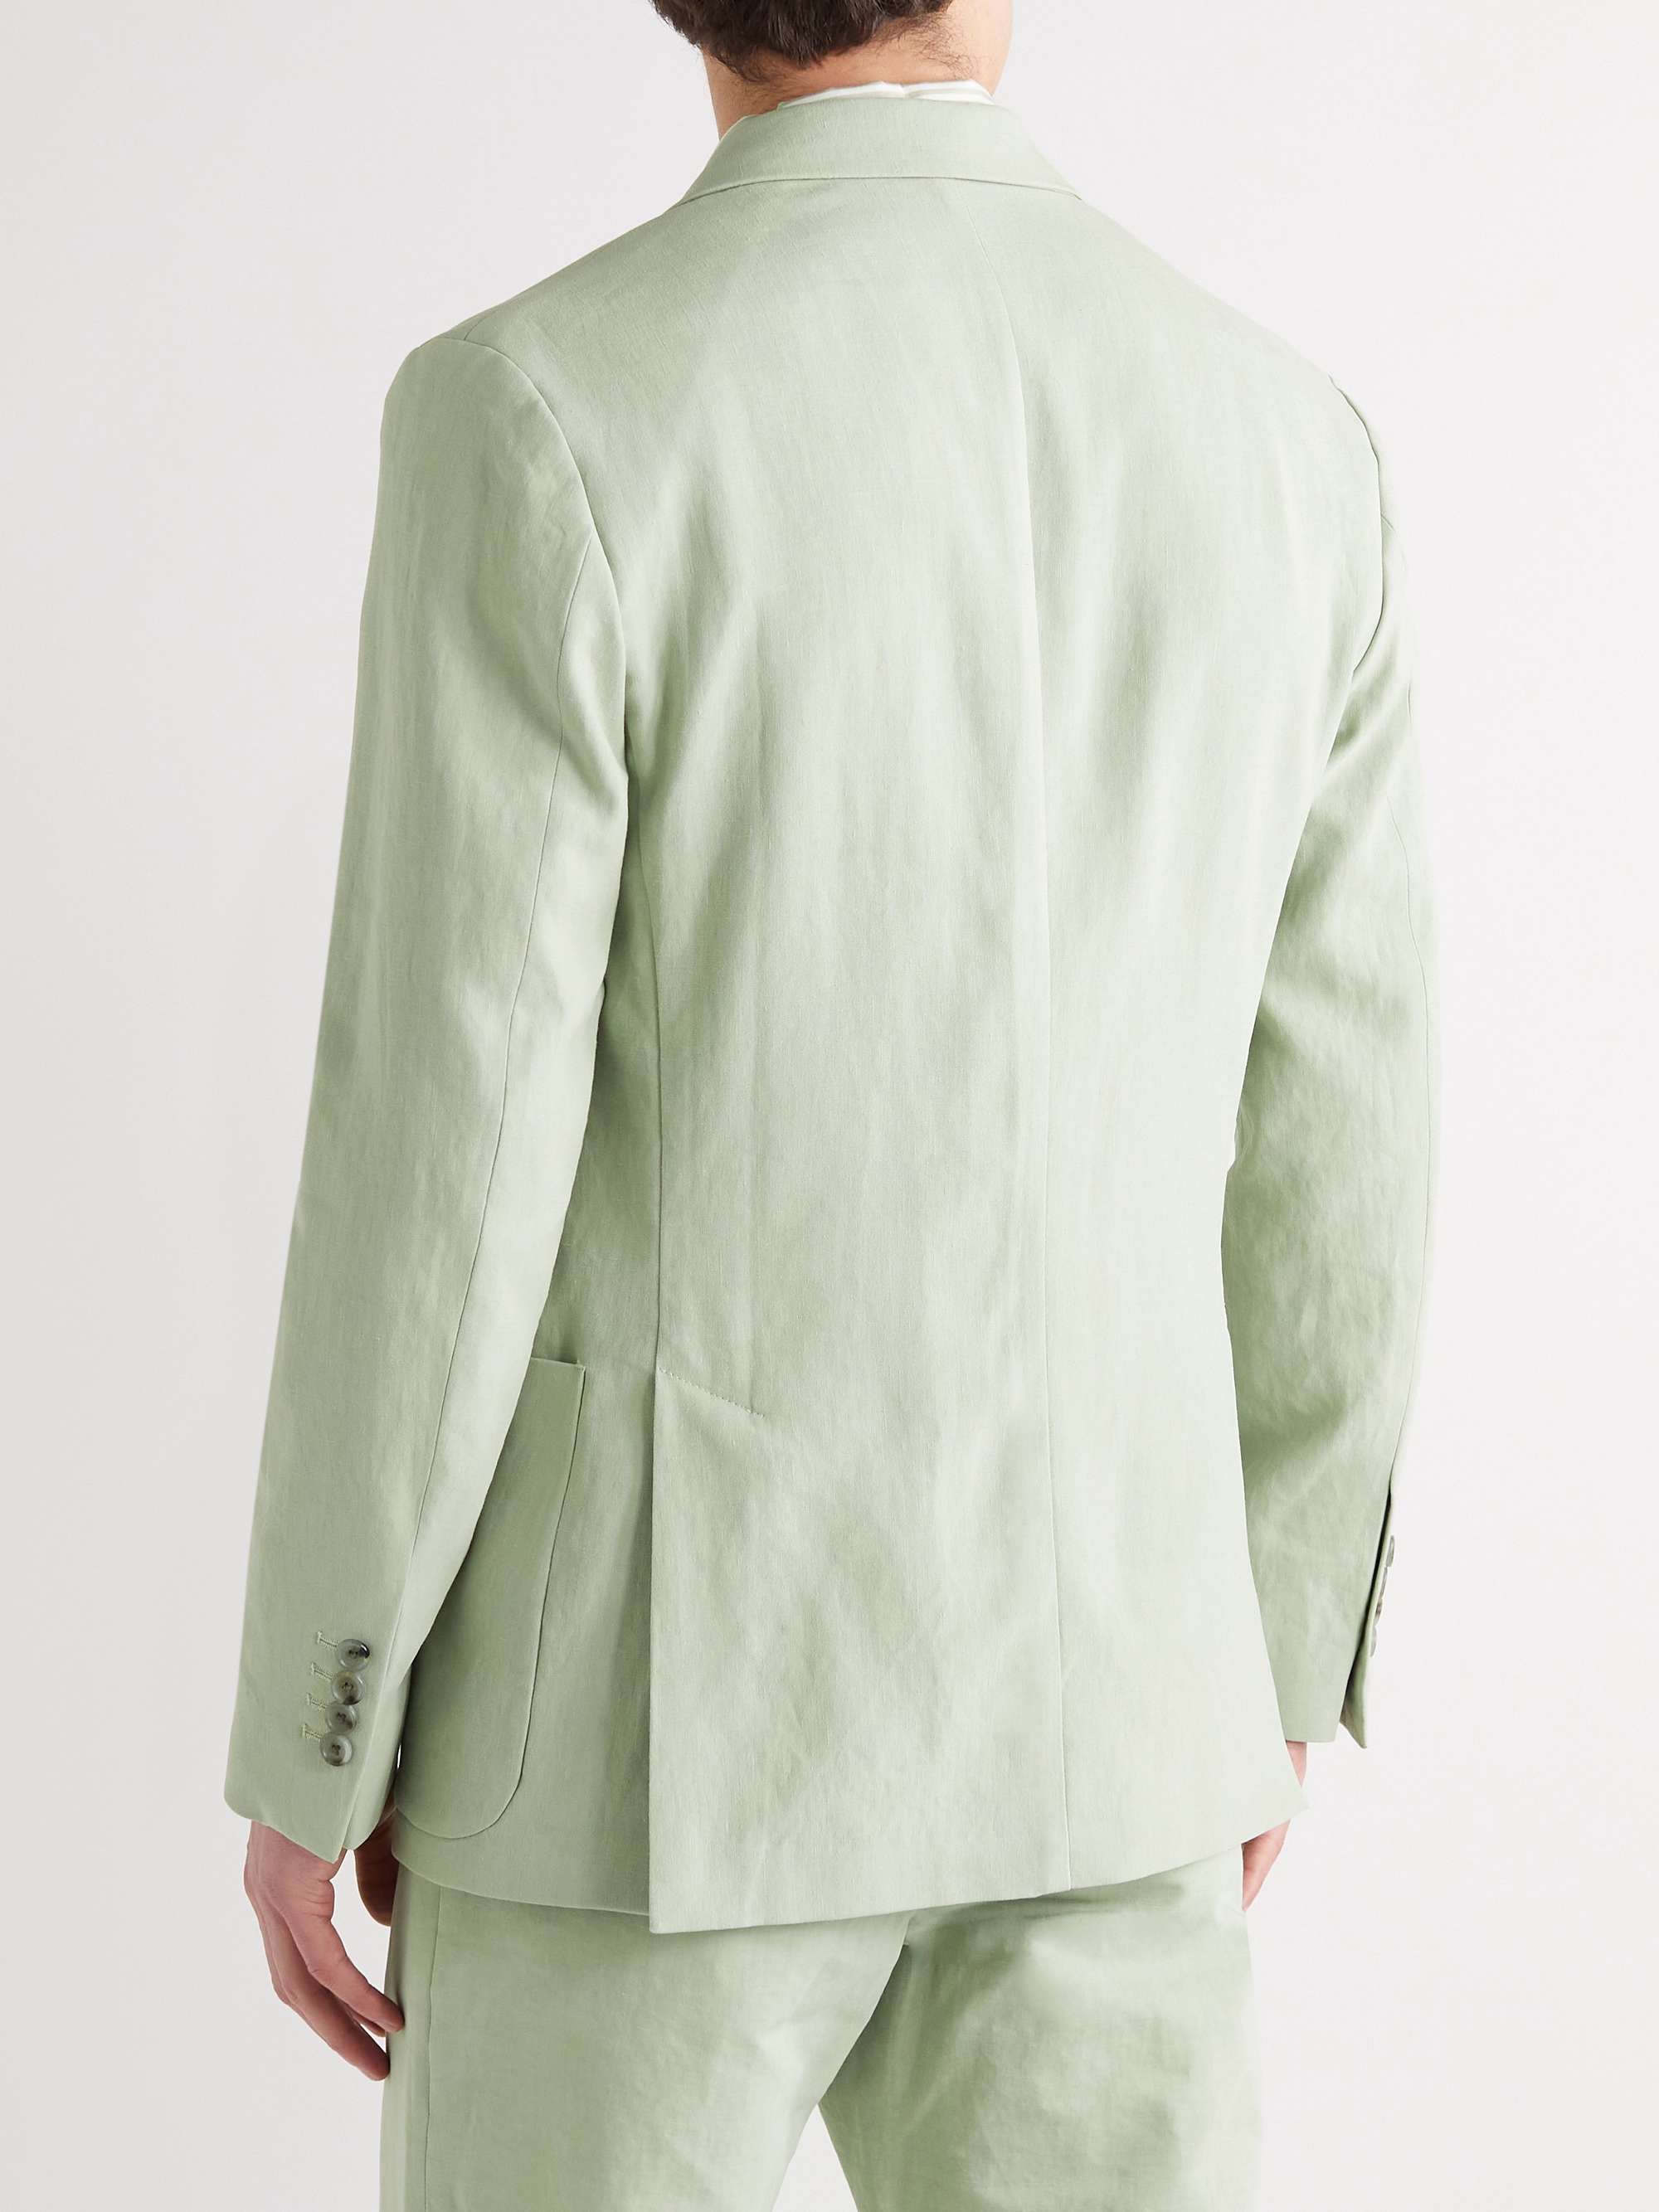 PAUL SMITH Linen Suit Jacket